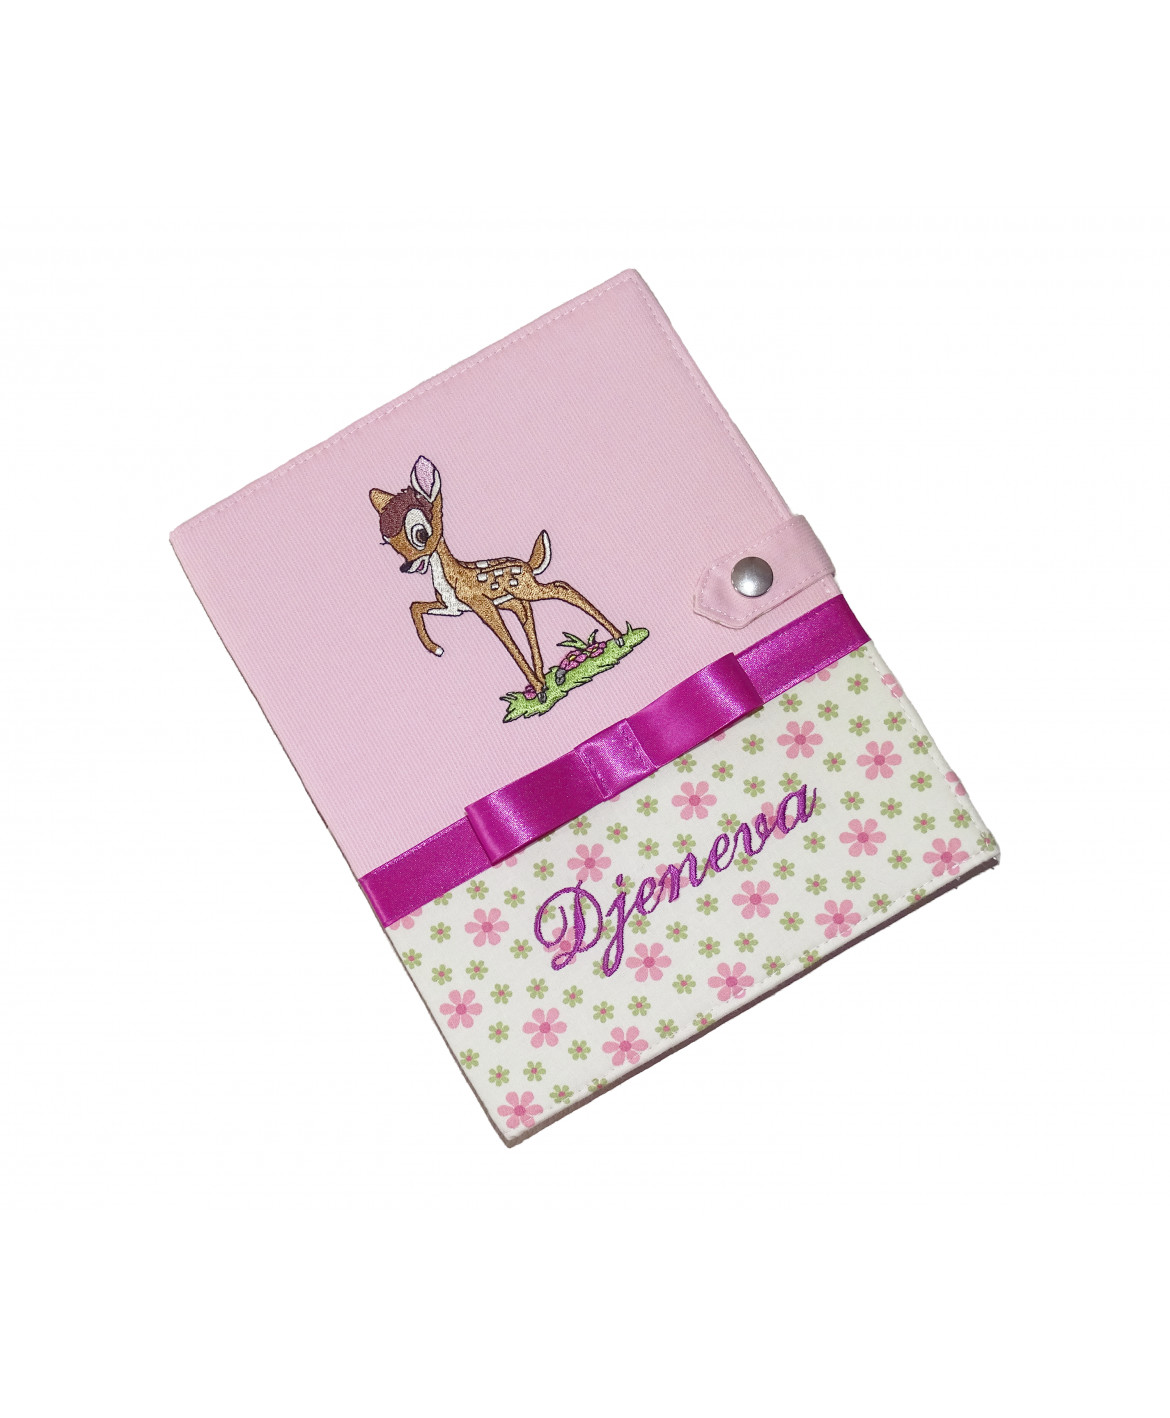 Protège carnet de santé bambi fille rigide personnalisé - Cadeau de naissance personnalisé - faon